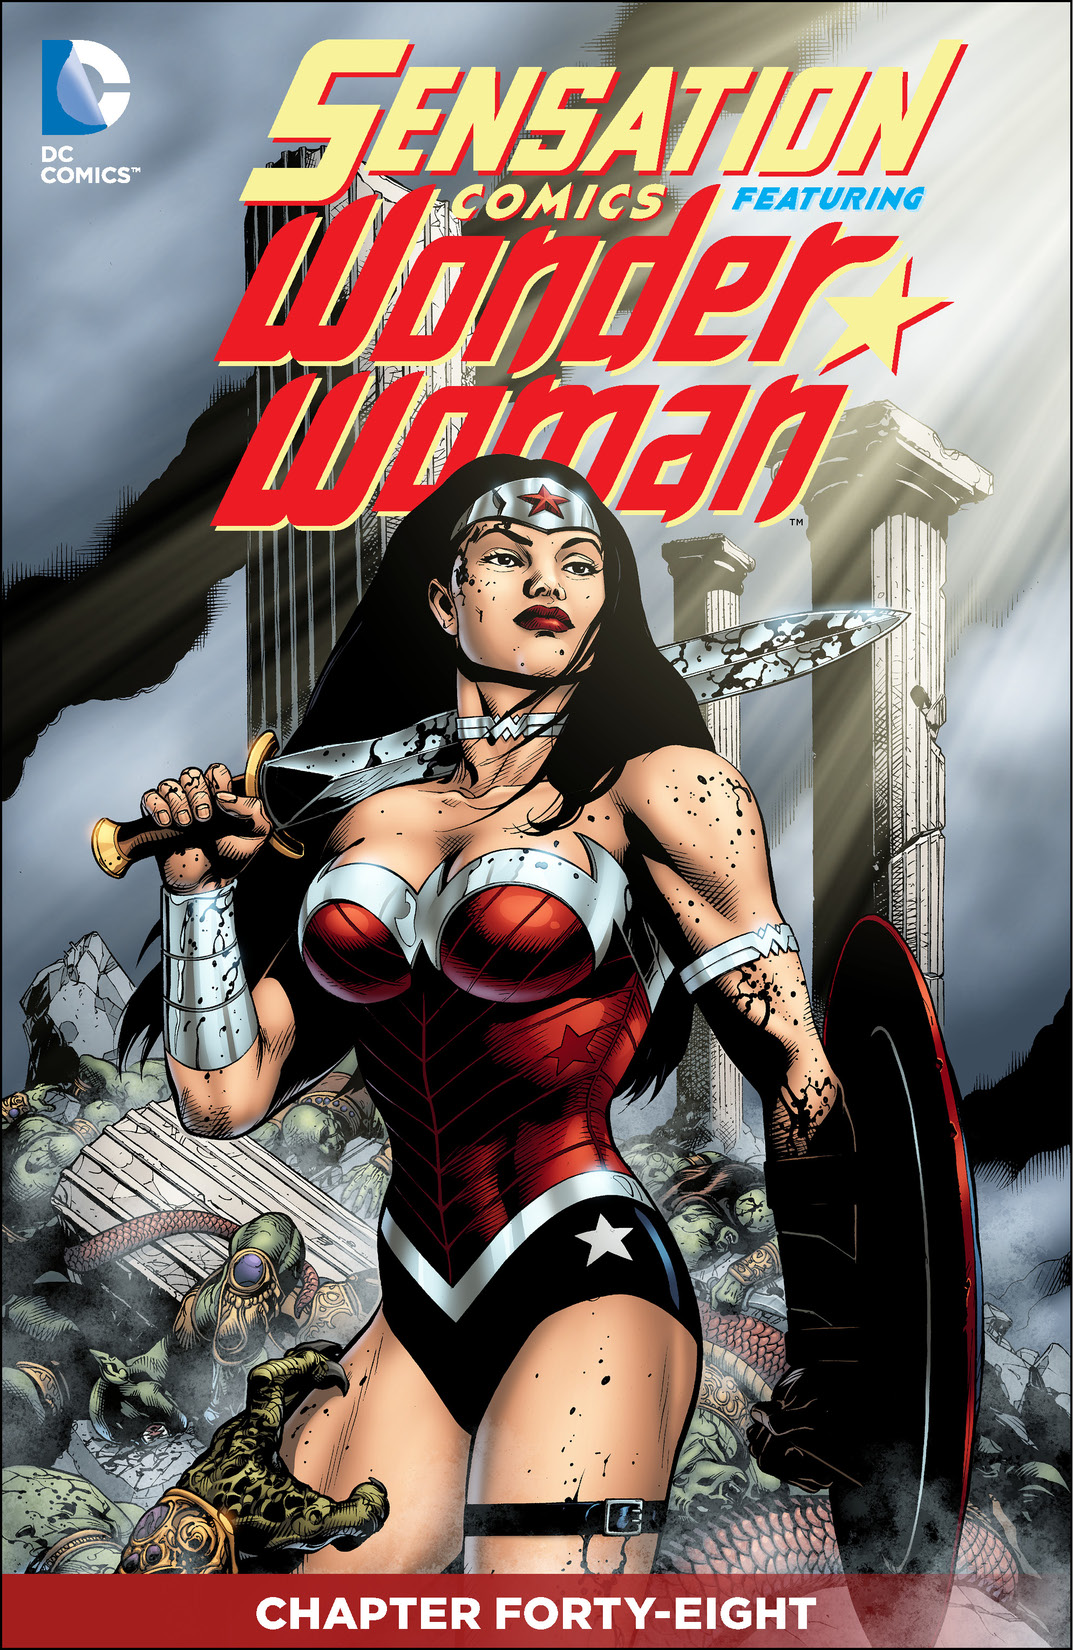 Sensation Comics Featuring Wonder Woman #48 preview images